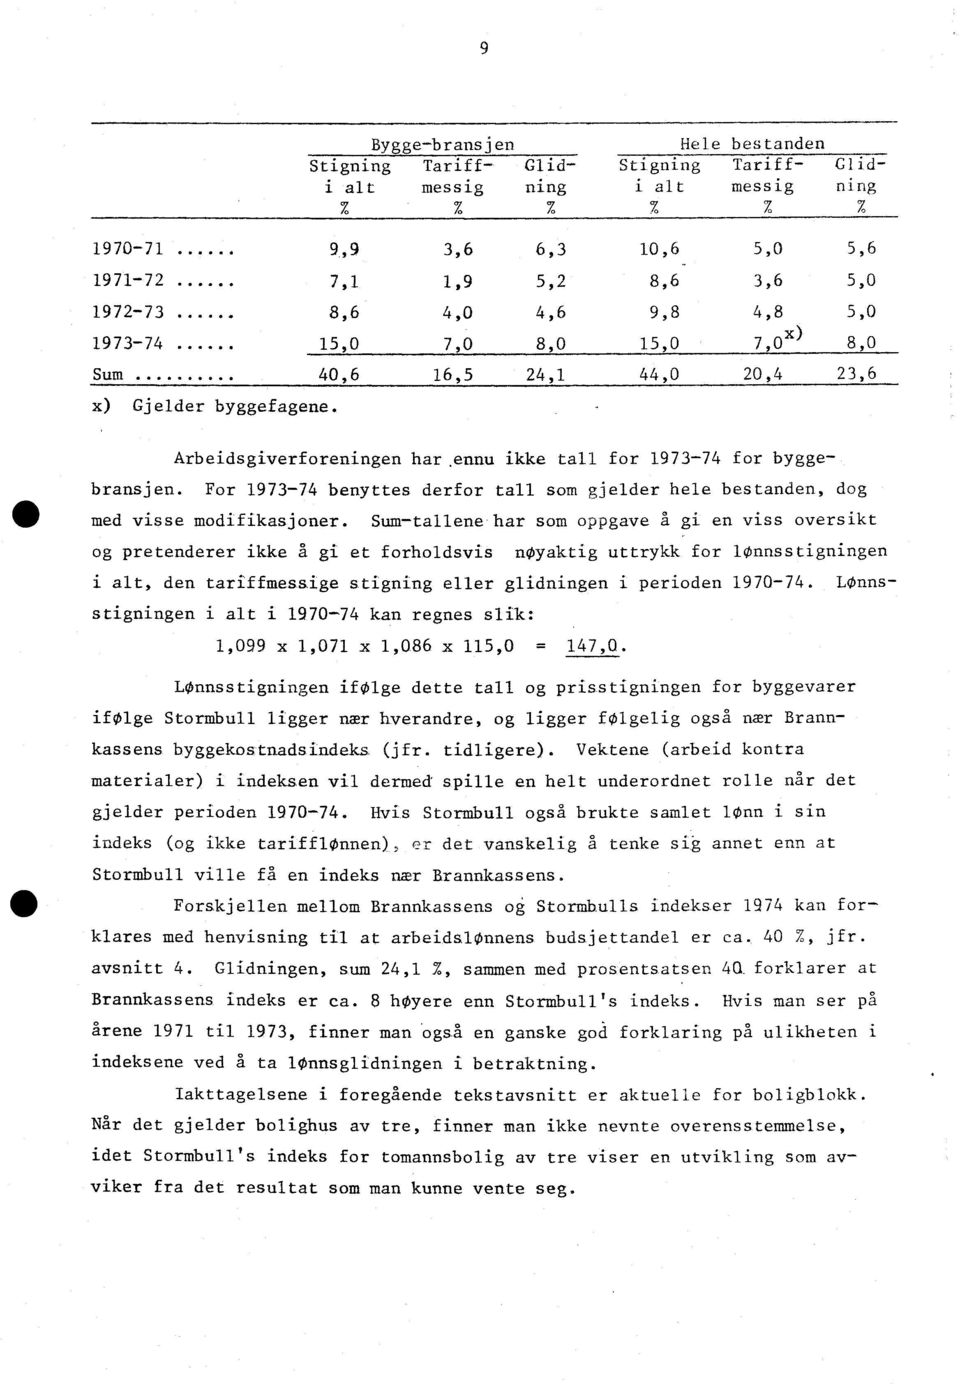 For 1973-74 benyttes derfor tall som gjelder hele bestanden, dog med visse modifikasjoner.